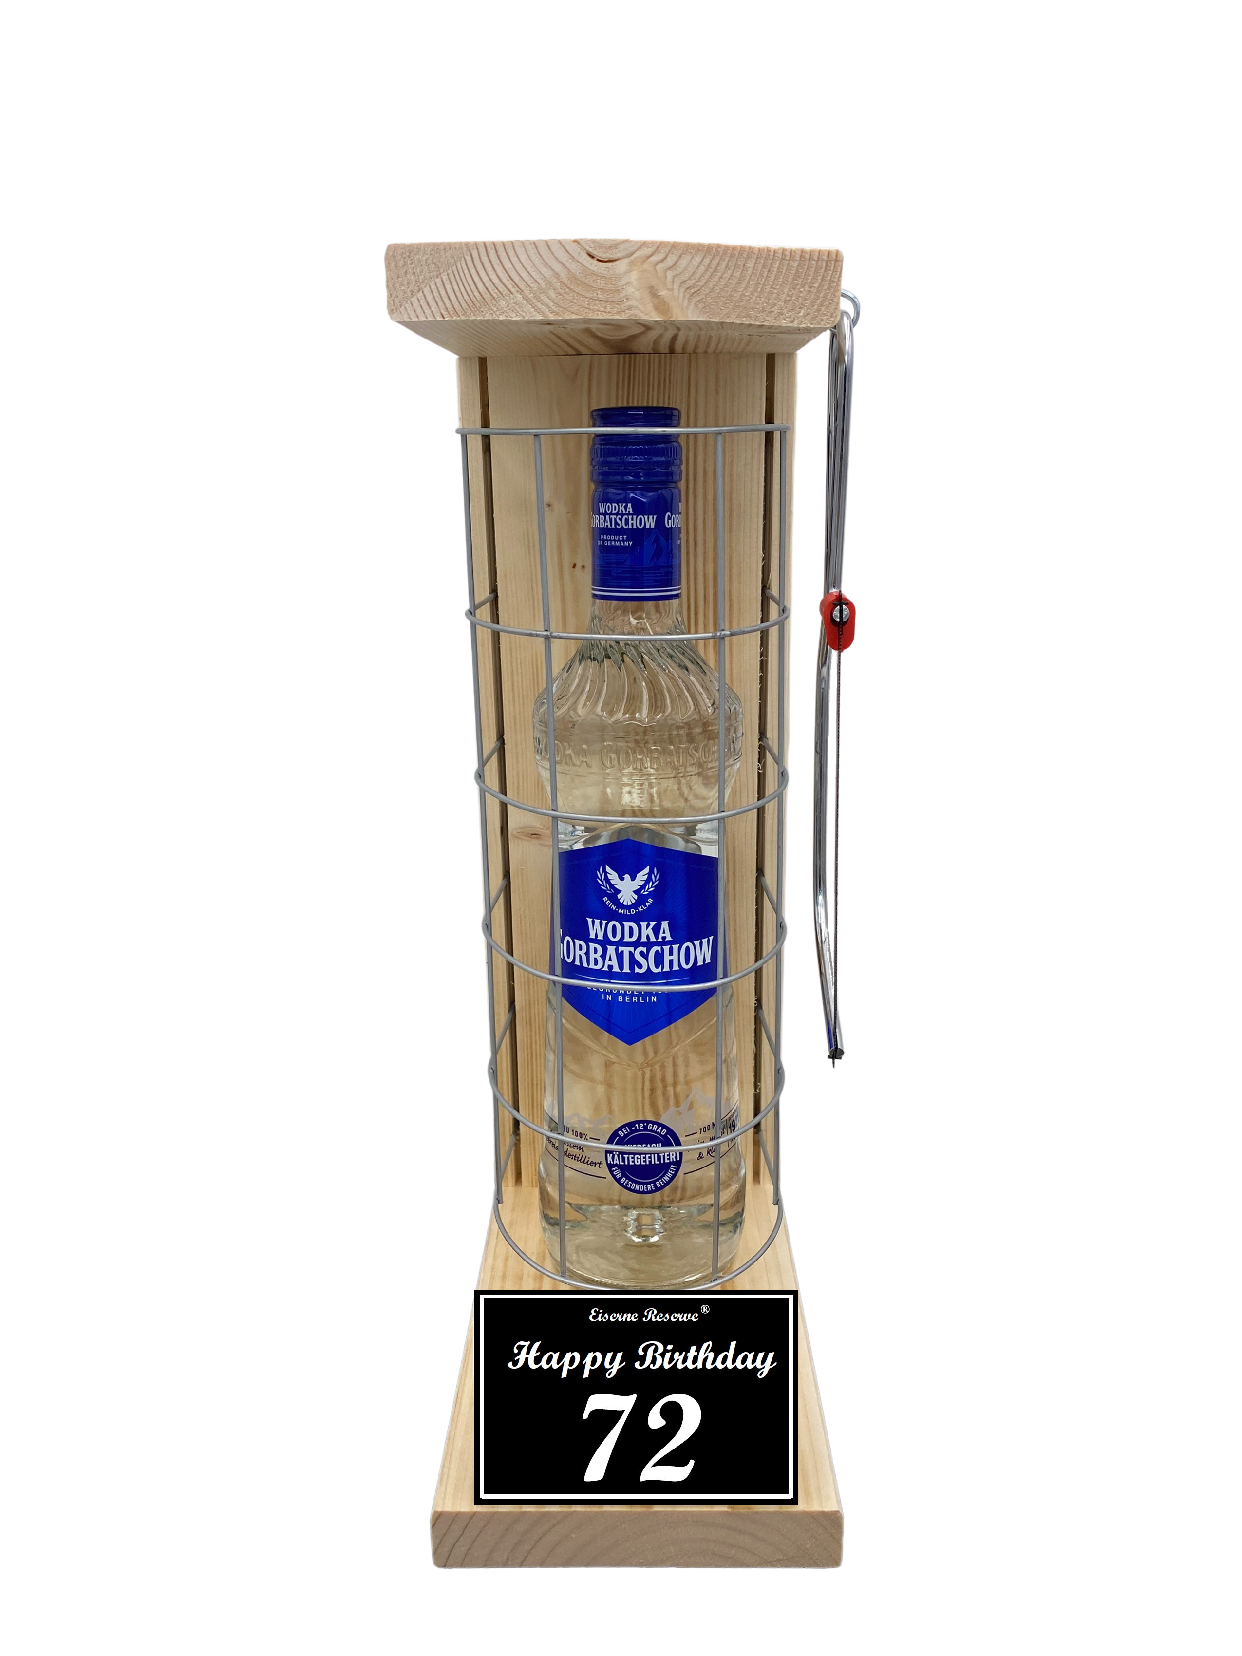 Wodka Geschenk zum 72 Geburtstag - Eiserne Reserve Gitterkäfig